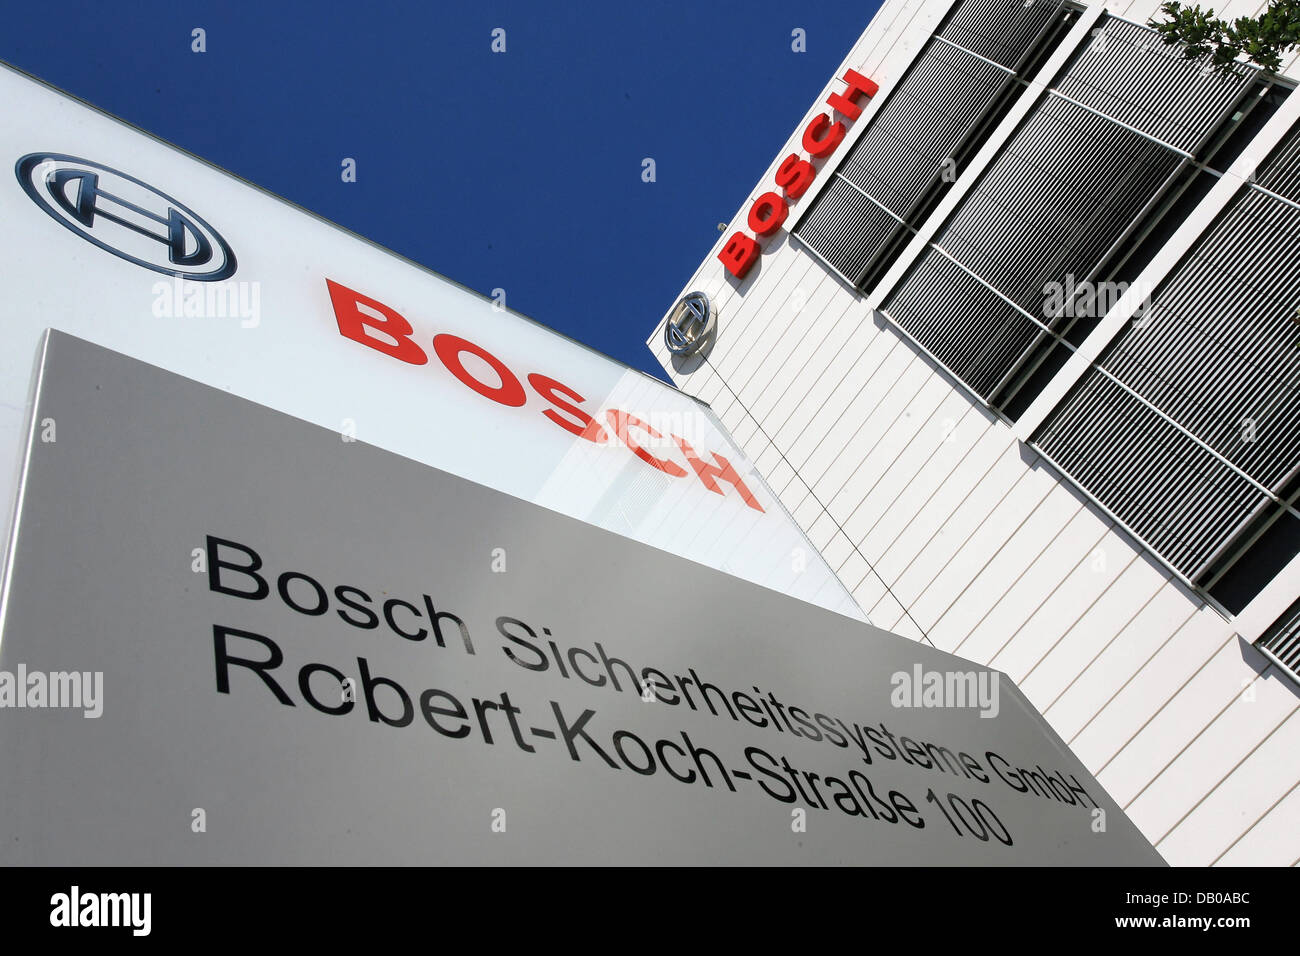 Bosch sicherheitssysteme frankfurt